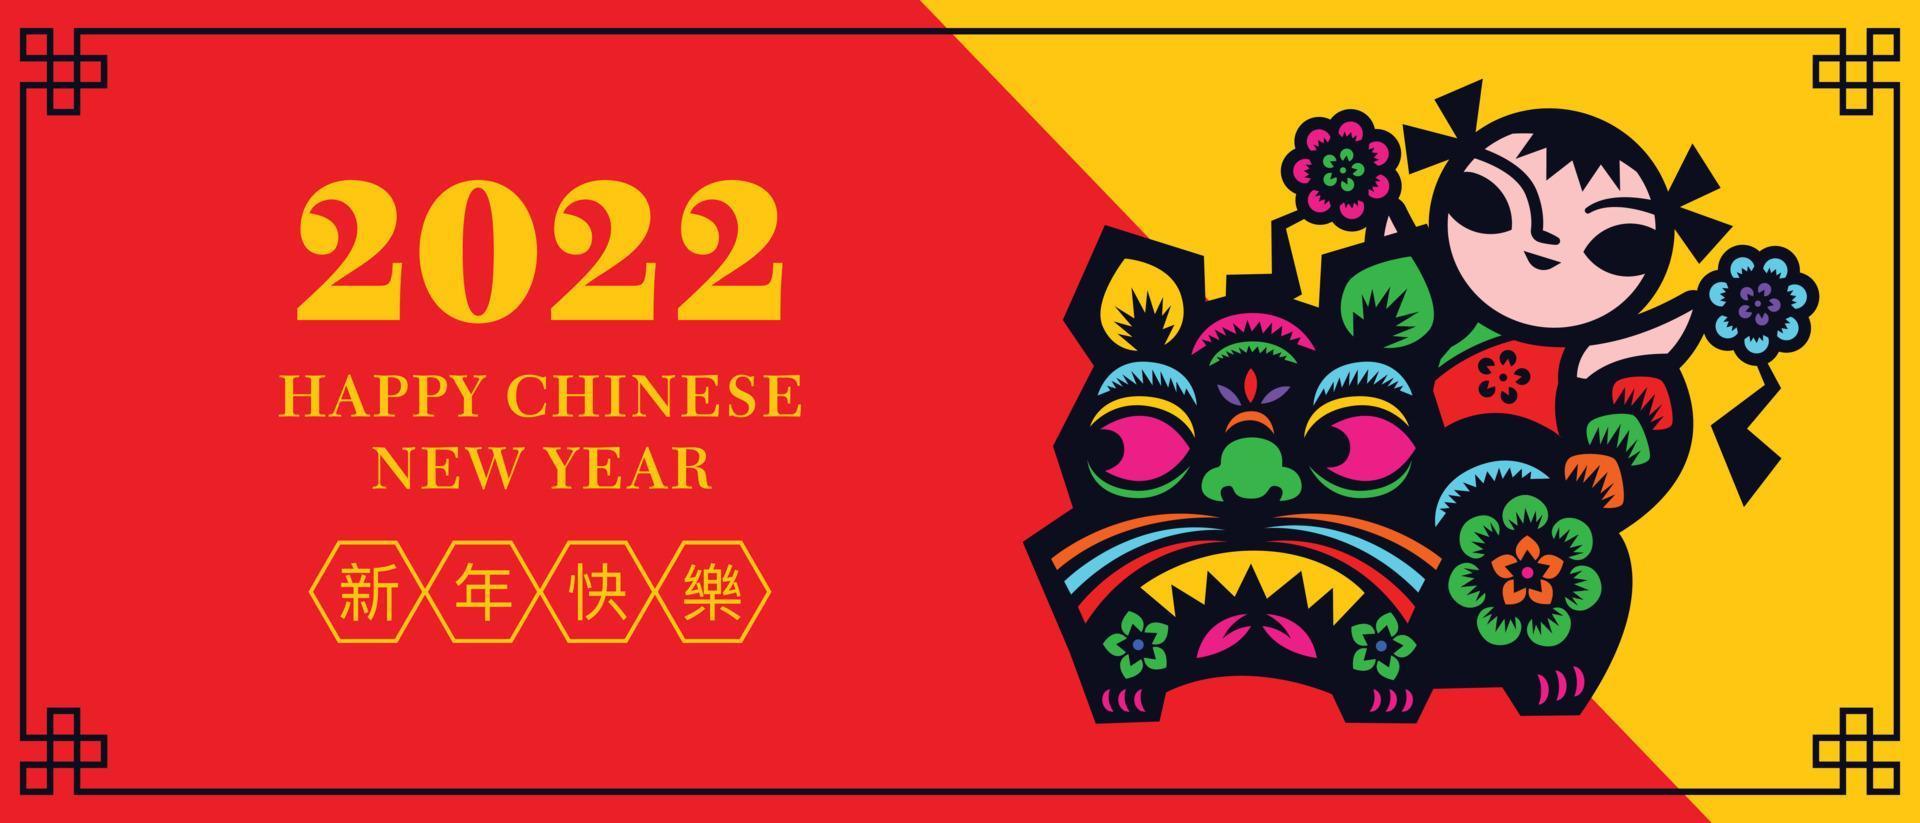 ano novo chinês 2022. arte de corte de papel do símbolo do tigre e criança segurando uma bola floral no fundo da decoração do elemento festivo oriental vetor